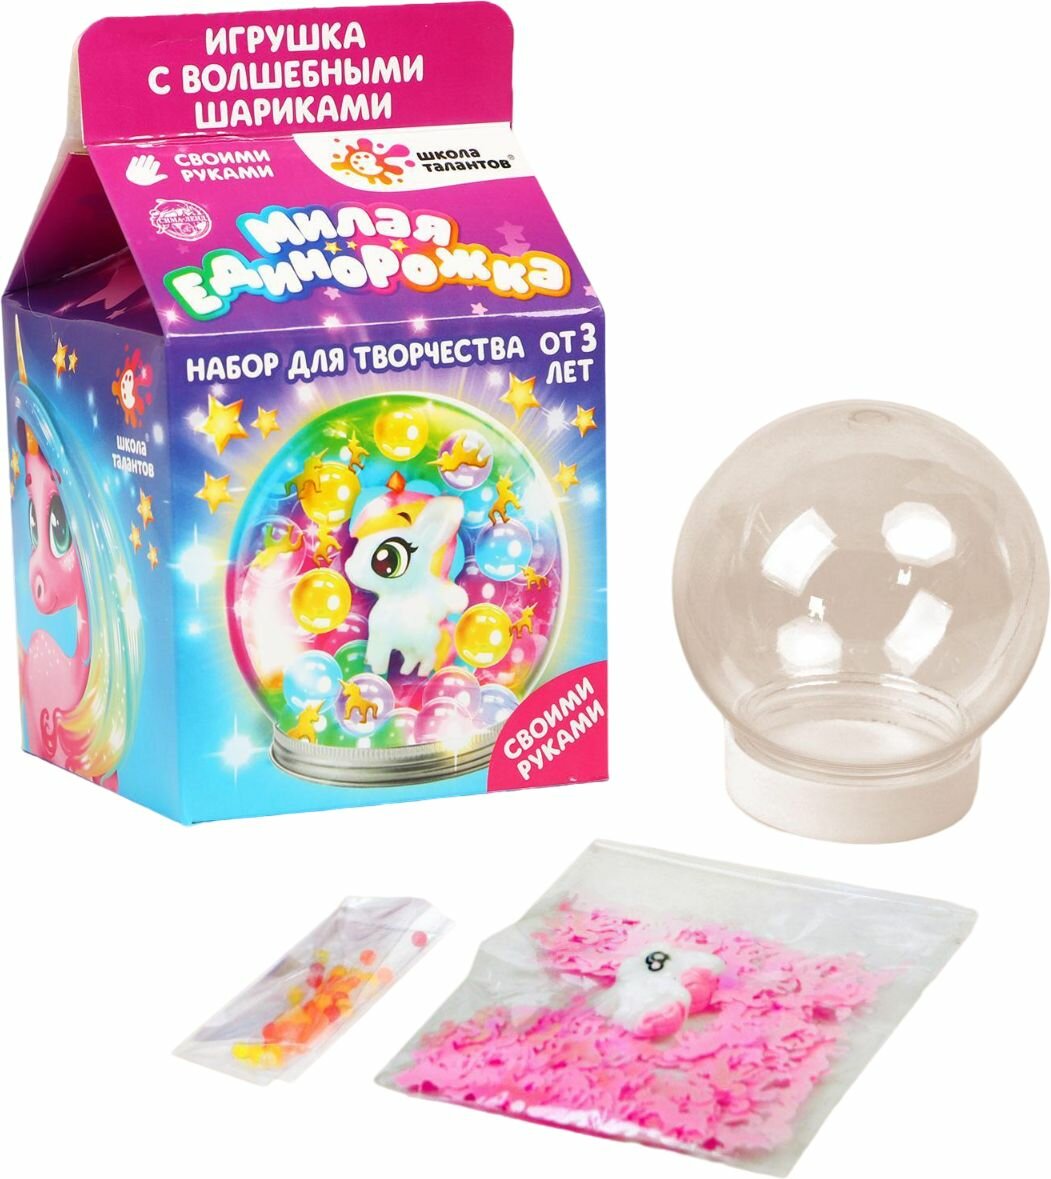 Детский набор для творчества "Волшебный шар с гидрогелем: милая единорожка", светящаяся игрушка, в комплекте шарики гидрогеля, декор и игрушка, круглая баночка